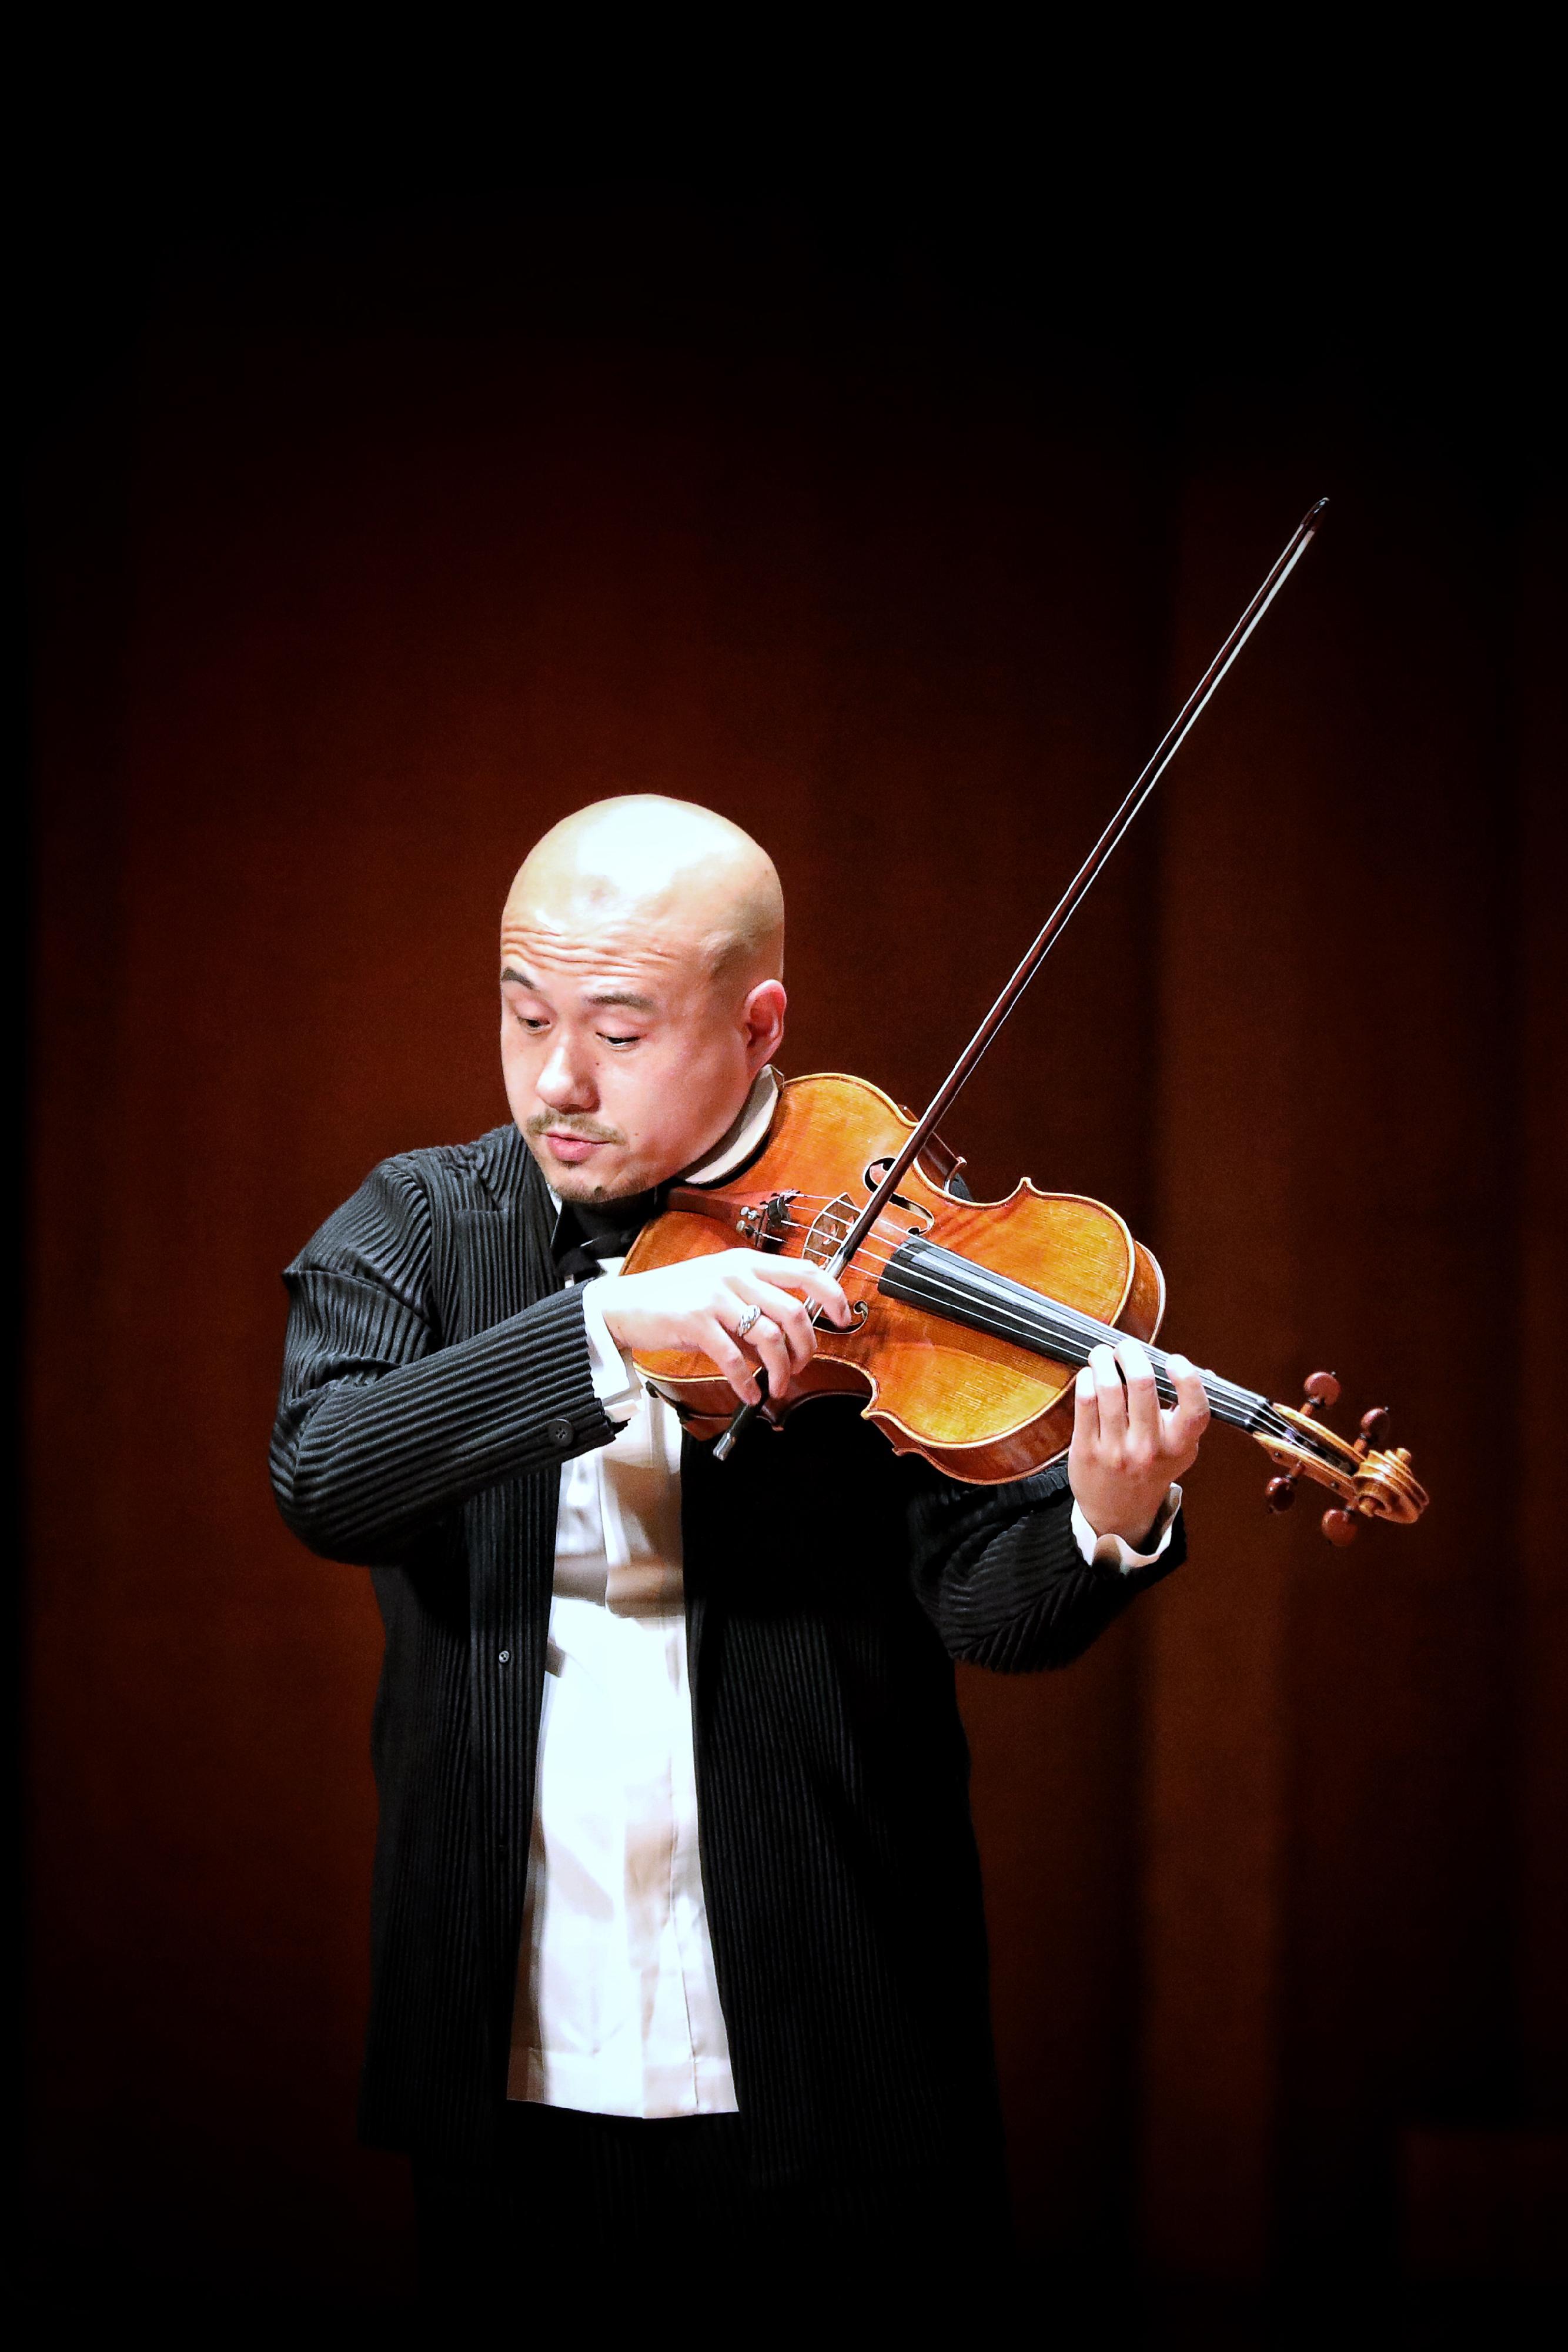 康樂及文化事務署七月三十一日舉行「大會堂樂萃」系列：孫圉中提琴演奏會。圖為中提琴家孫圉。